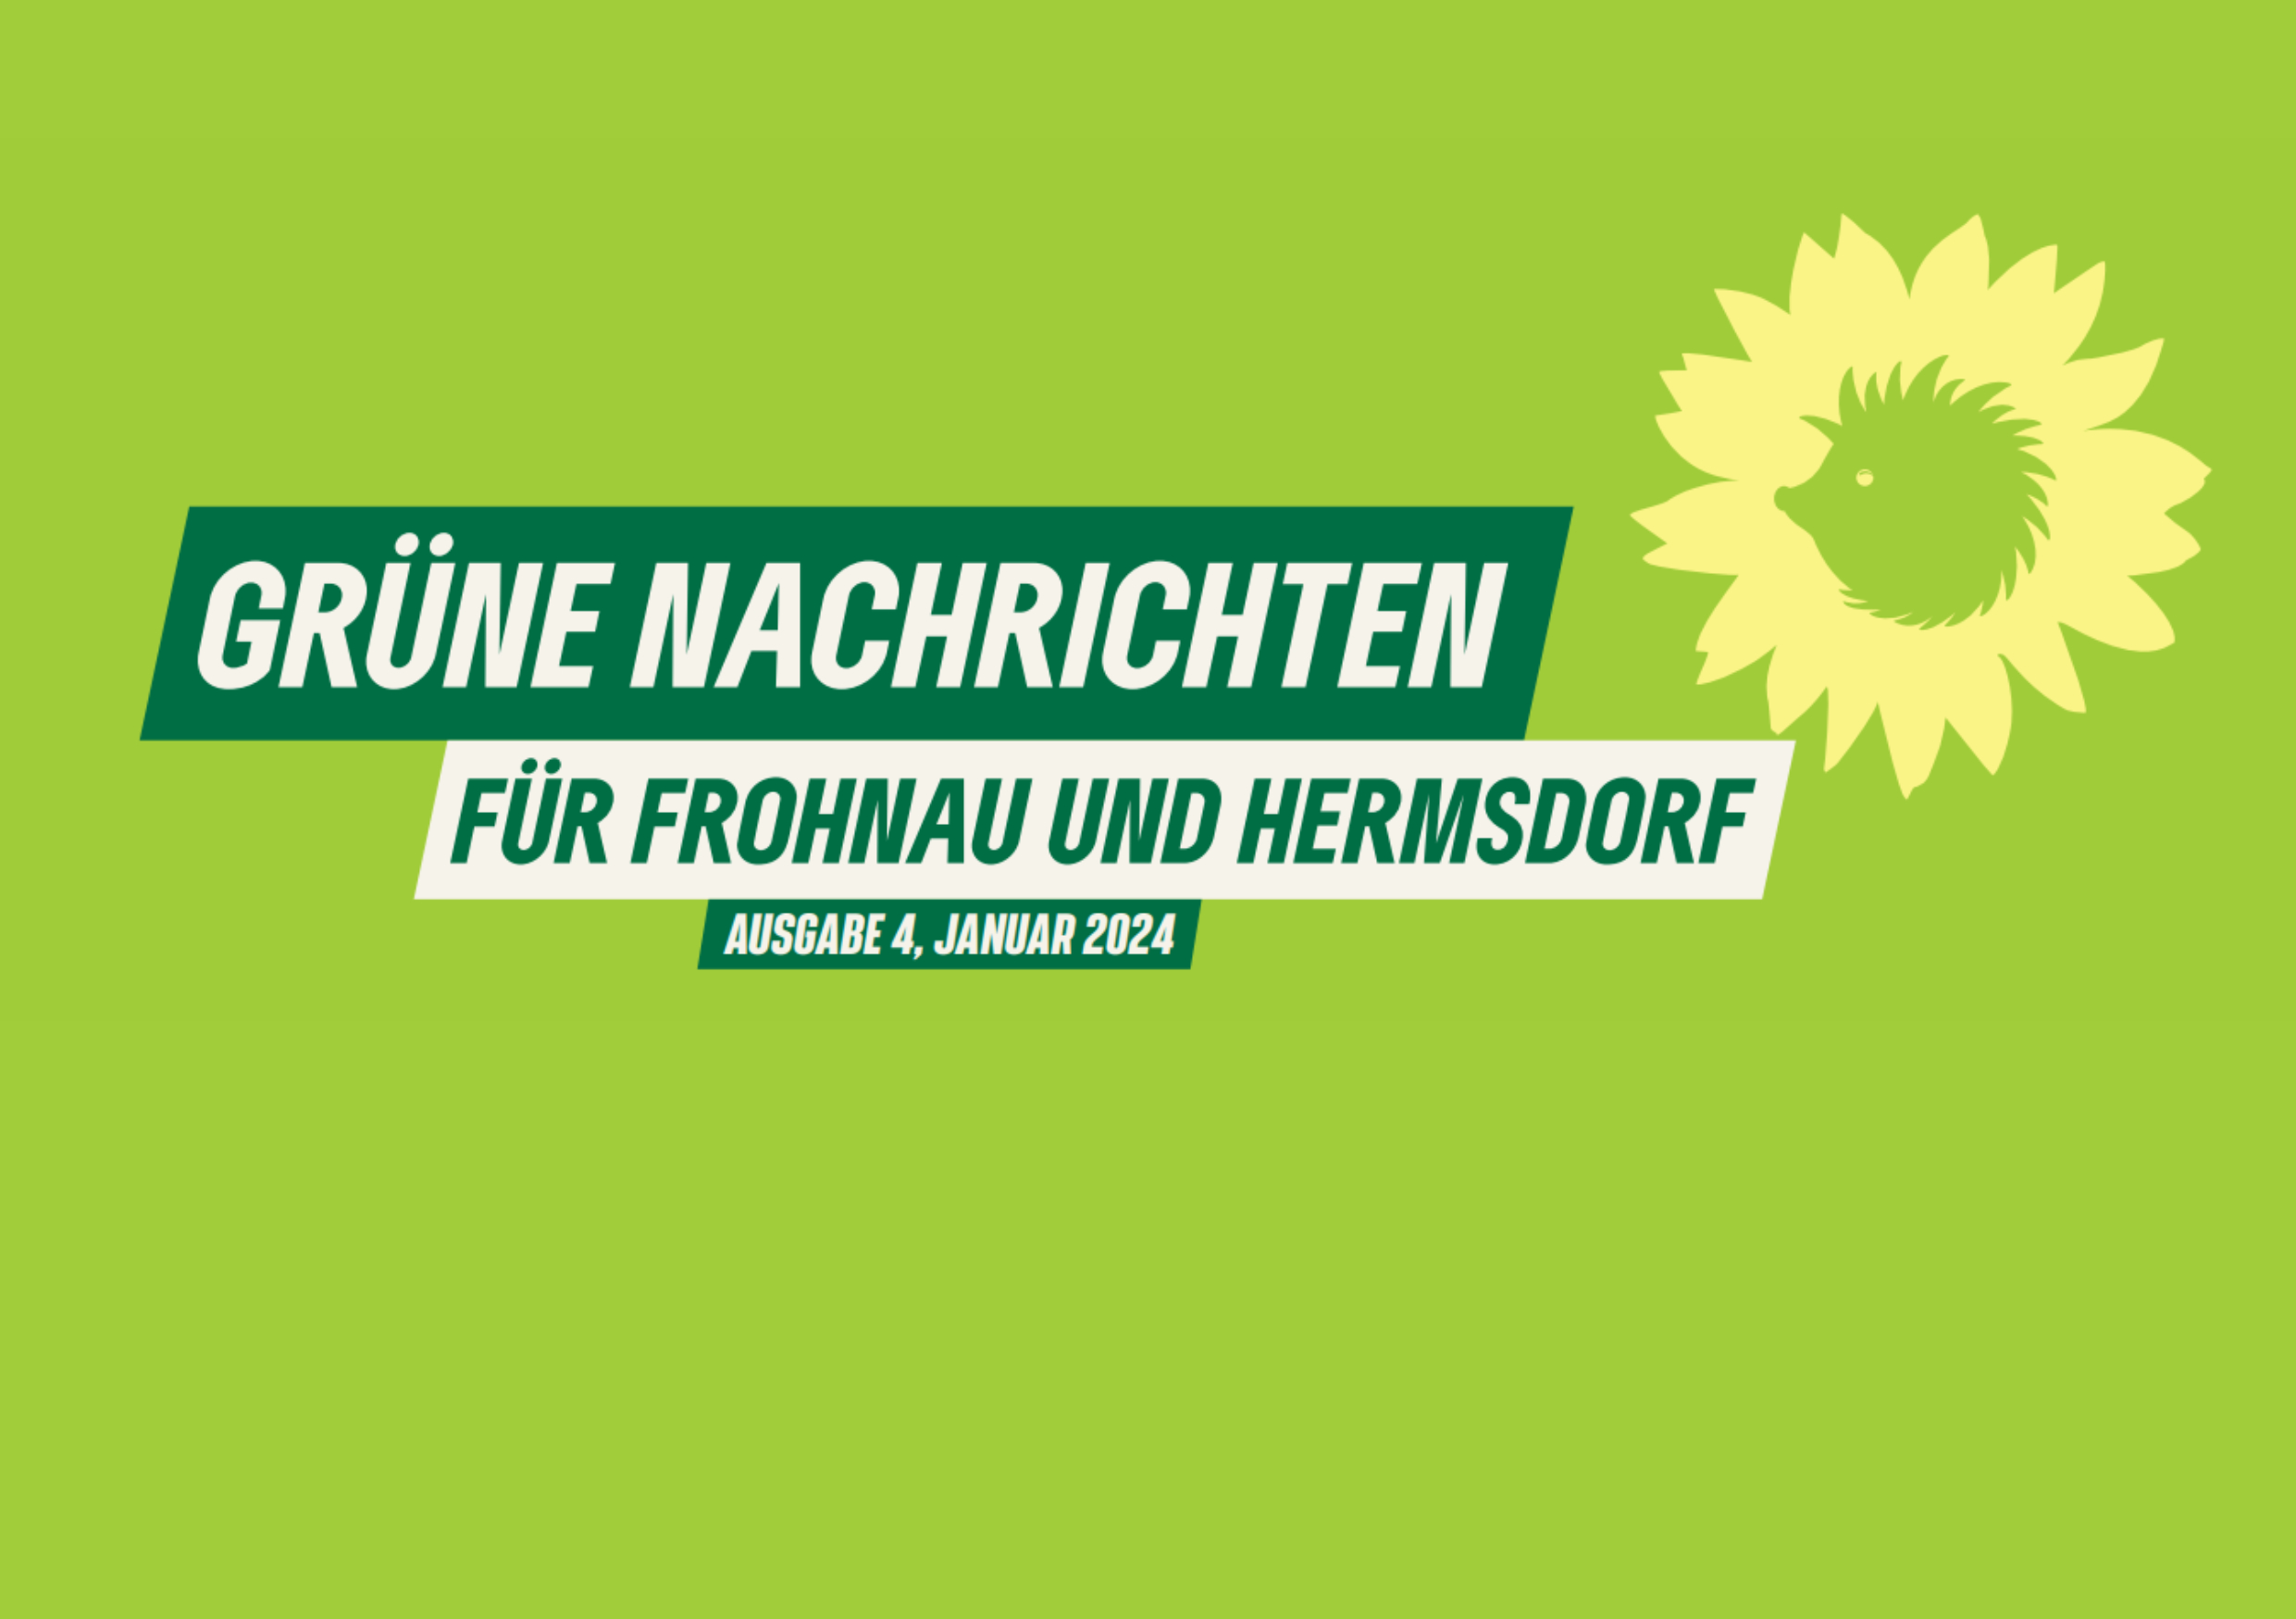 Das Bidl zeigt den Schriftzug: "Grüne Nachrichten für Frohnau und Hermsdorf, Ausgabe 4, Januar 2024" vor grünem Hintergrund. Daneben das Logo von Bündnis 90/Die Grünen: die Sonnenblume.